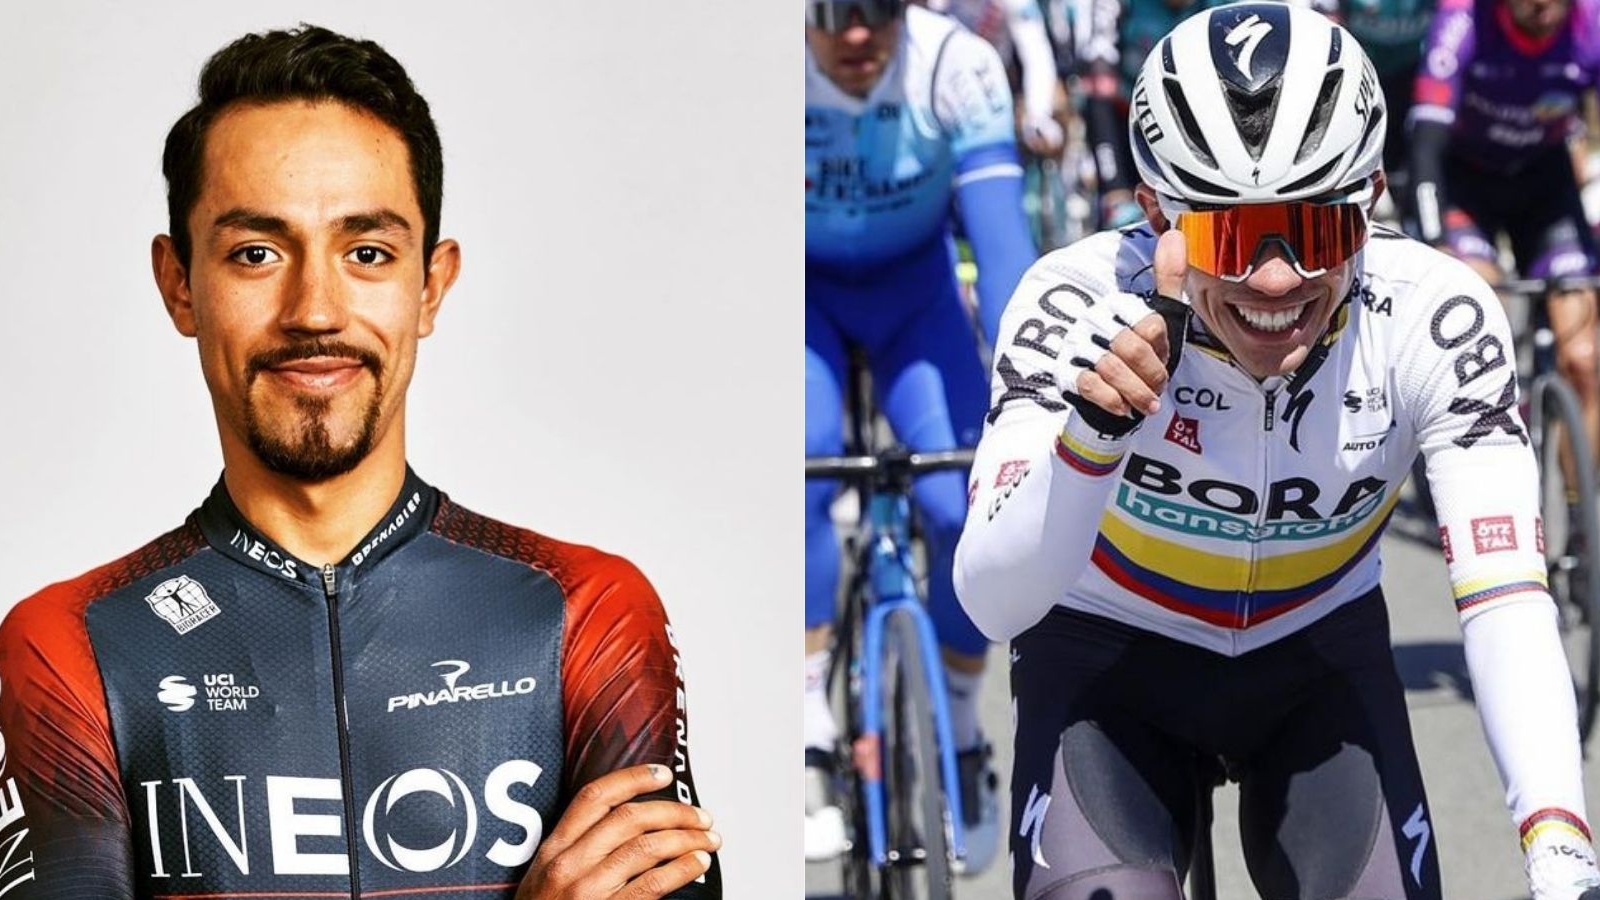 Dos colombianos quedaron entre los mejores 15 ciclistas del mundo